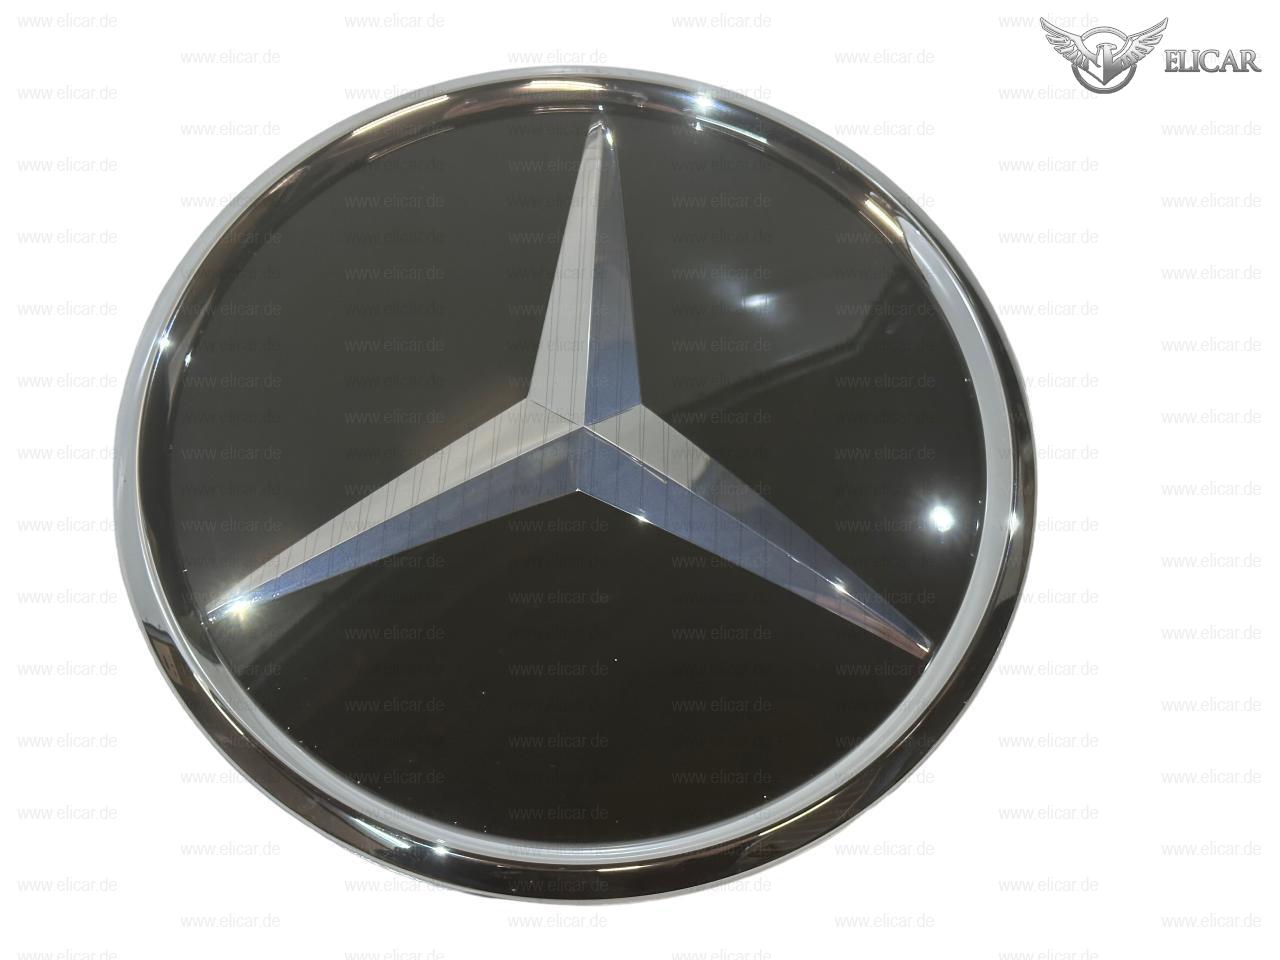 Grundplatte Kühlergrill / Stern Distronic / Neuwertig für Mercedes-Benz 